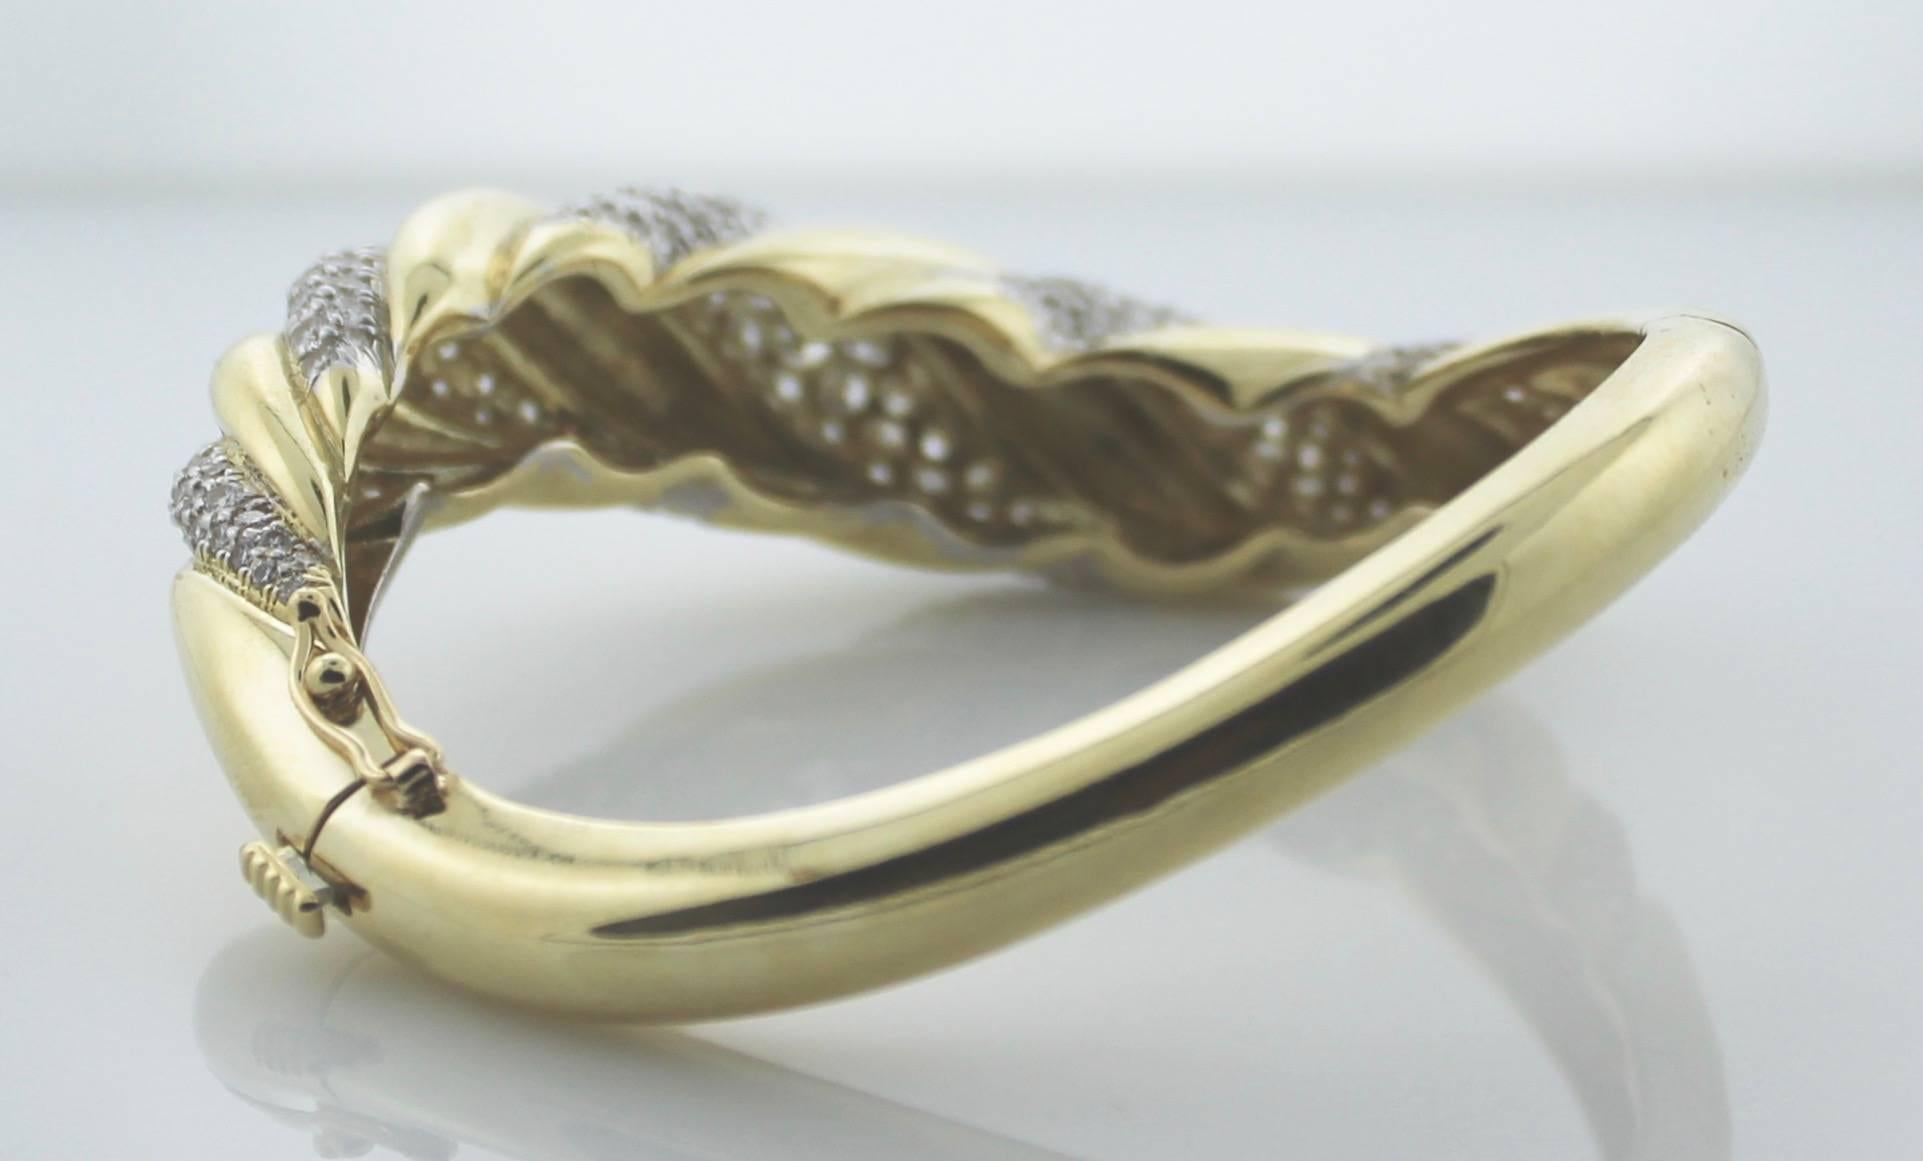 Wichtige 18k Gelbgold Diamant-Armreif Armband:
Bestehend aus einhundertfünfundneunzig runden Diamanten im Brillantschliff  Farbe-GH Klarheit VVS1-VS1.
Außergewöhnliche Qualität.  Die Trägerin wird es tatsächlich hören: Kugeln, Armreifen und Perlen